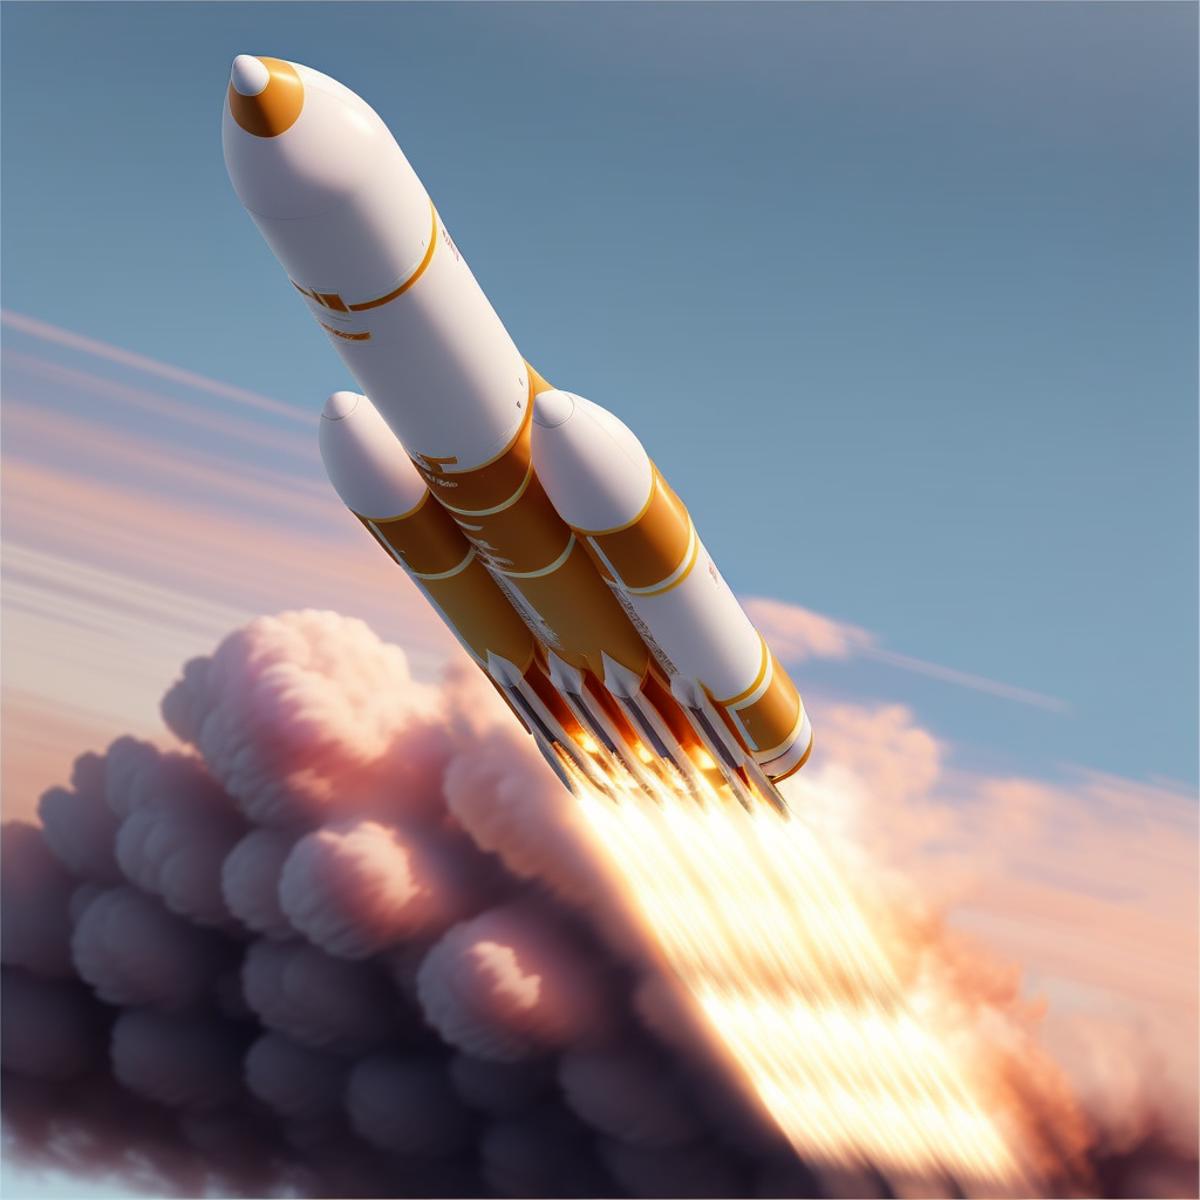 Rocket Startup image by navimixu